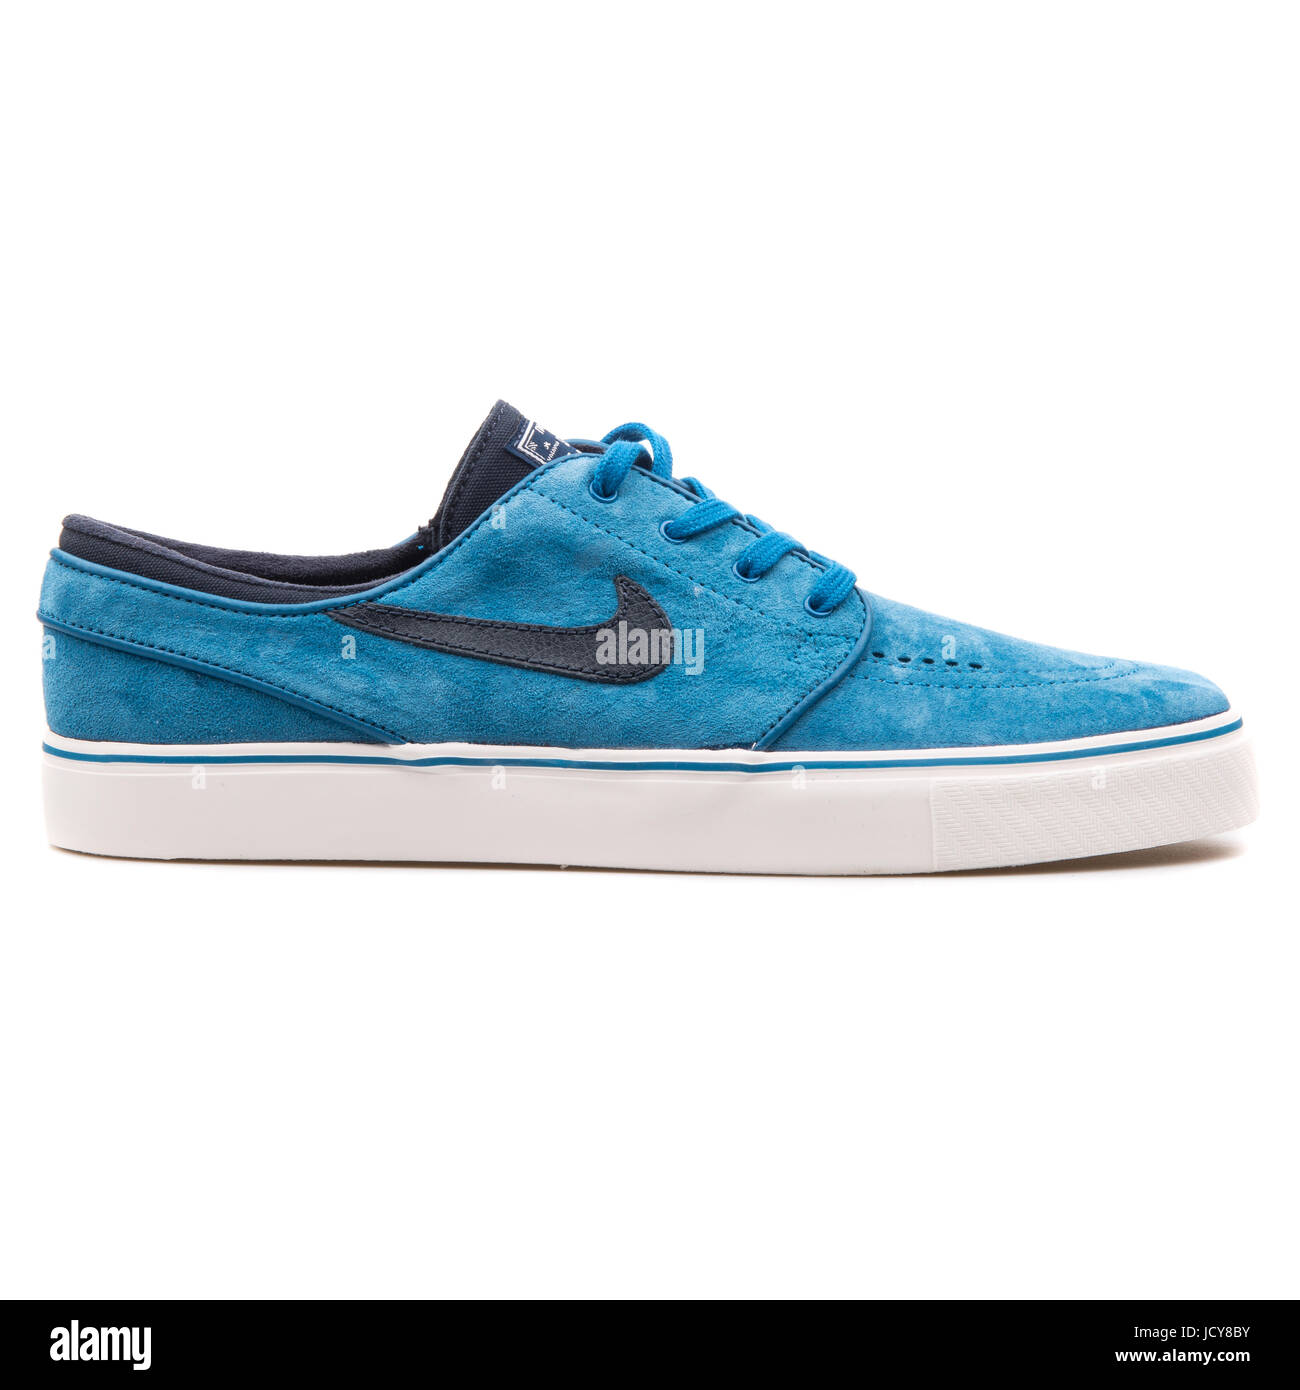 Nike Stefan Janoski SE Blue Men's Skateboarding Shoes - Fotografía stock - Alamy